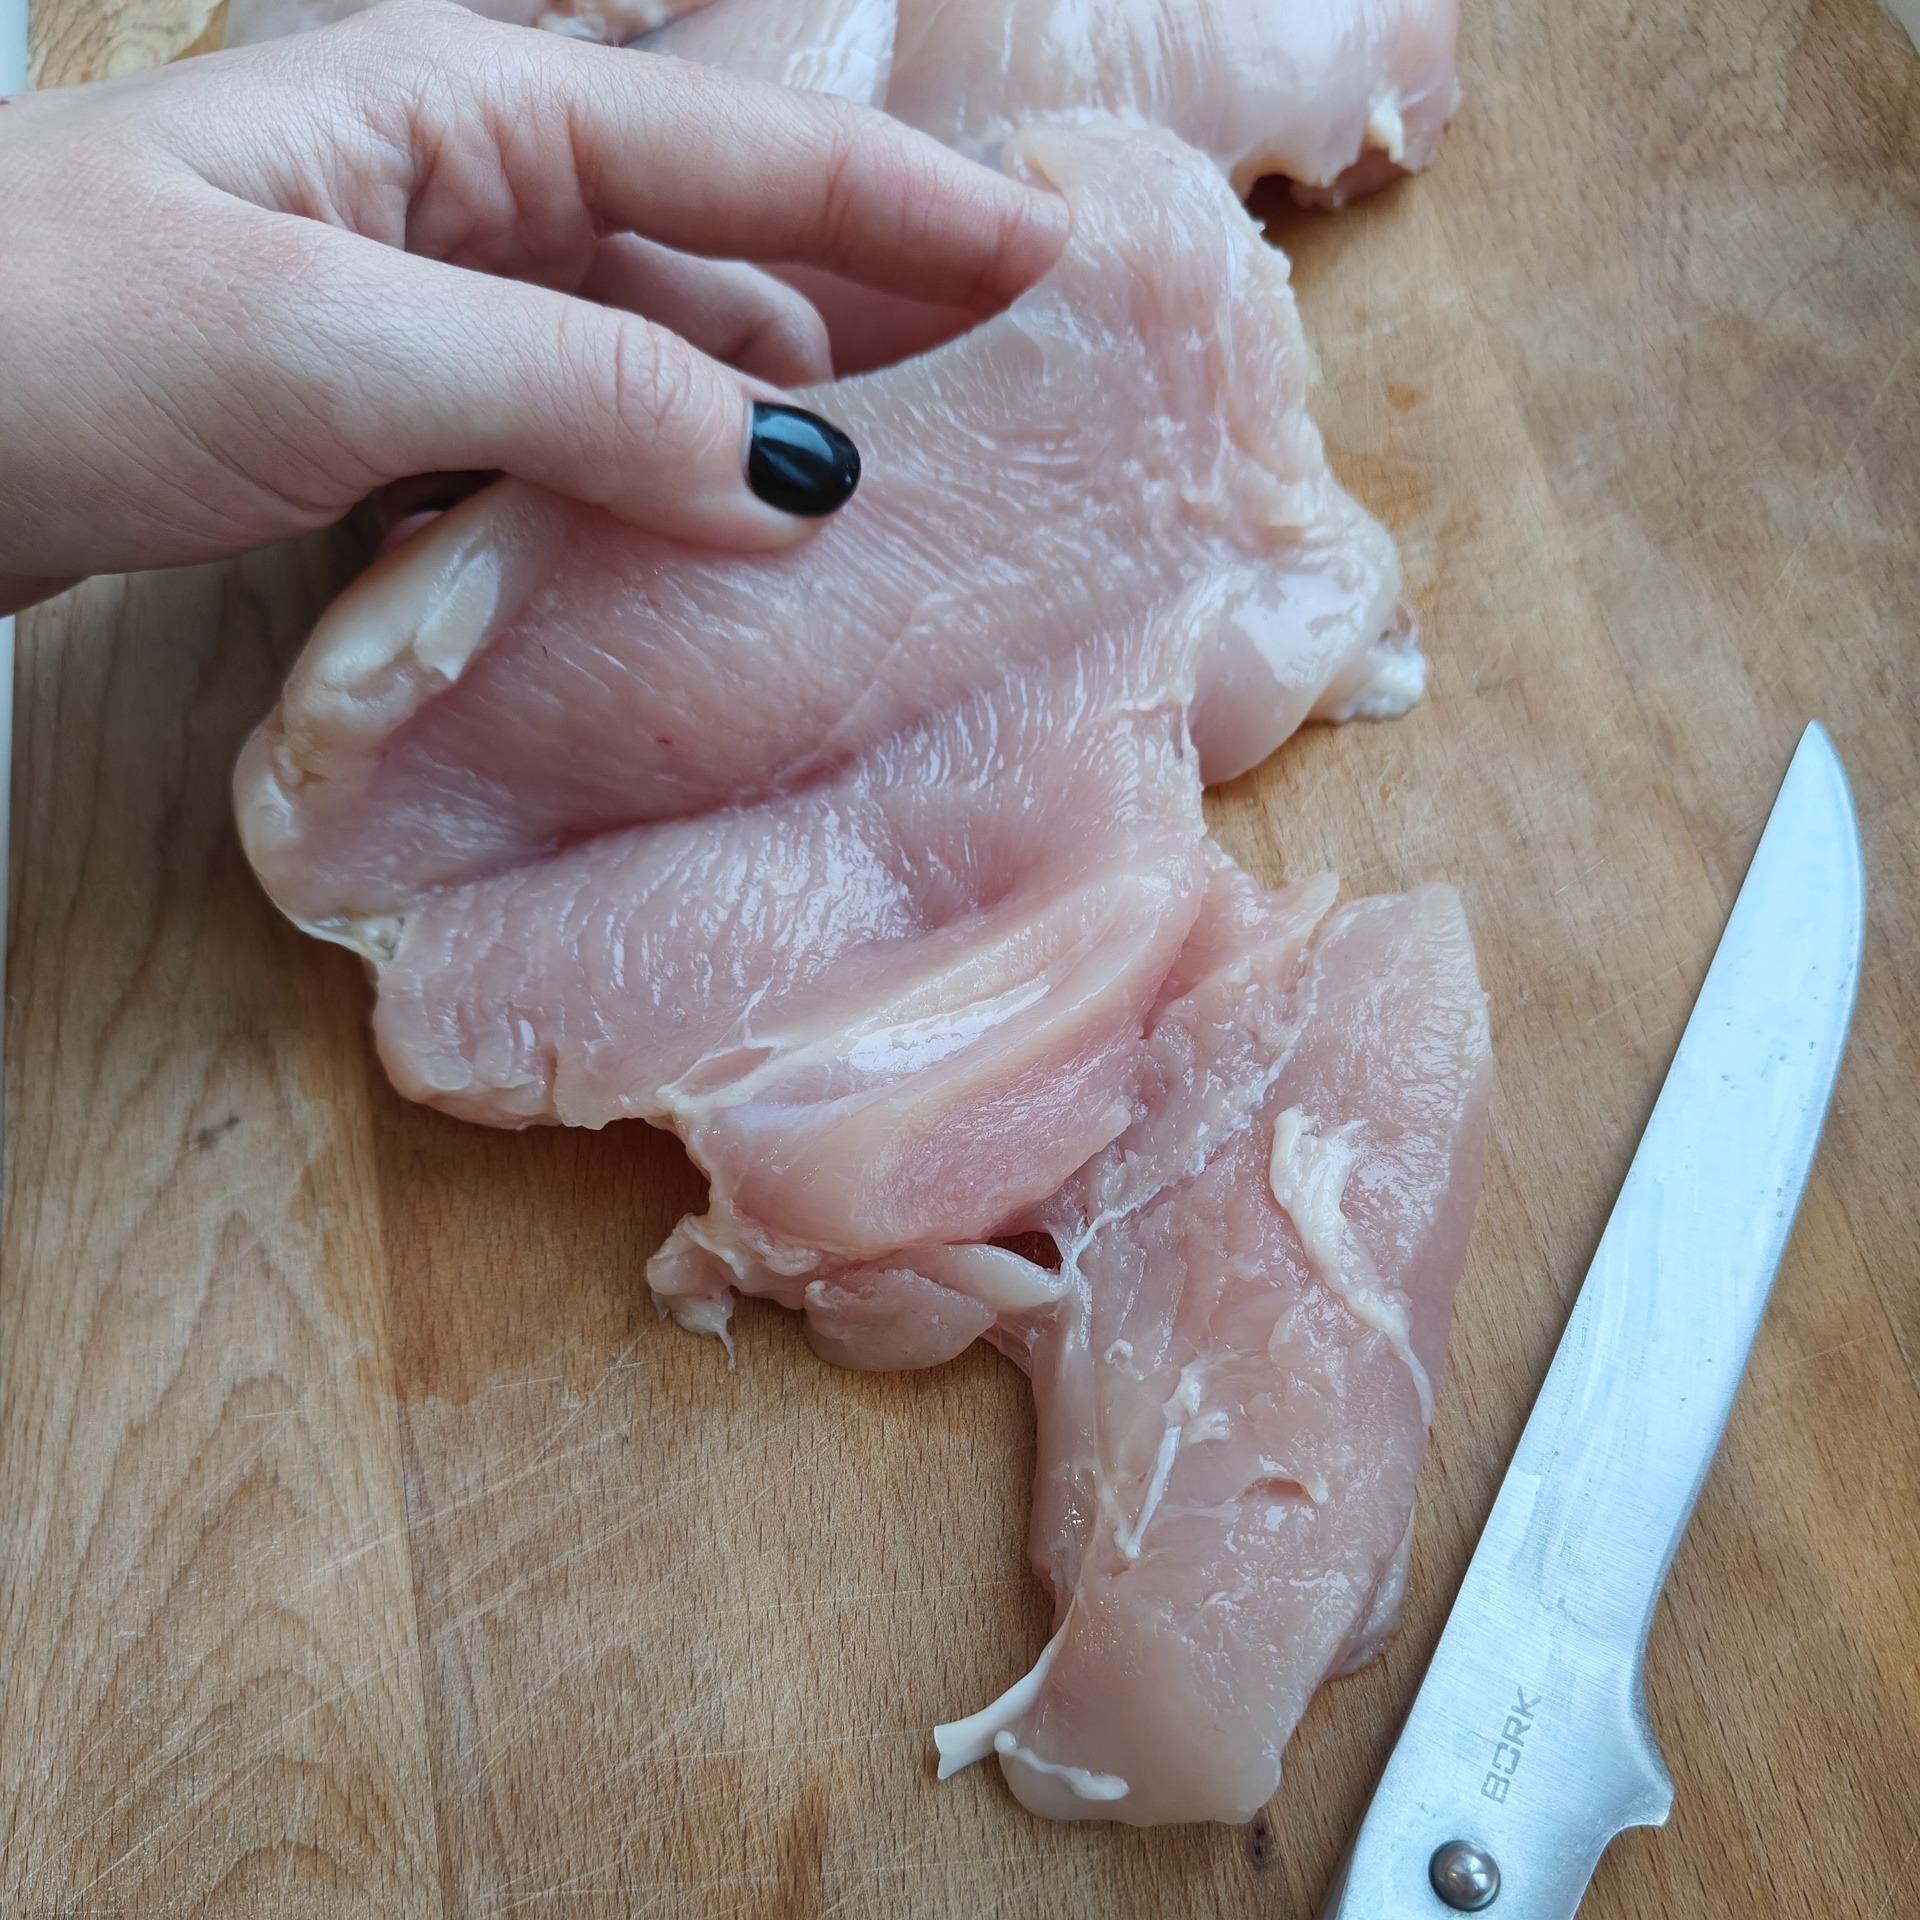 Шницель куриный в панировке из грудки на сковороде рецепт с фото пошагово